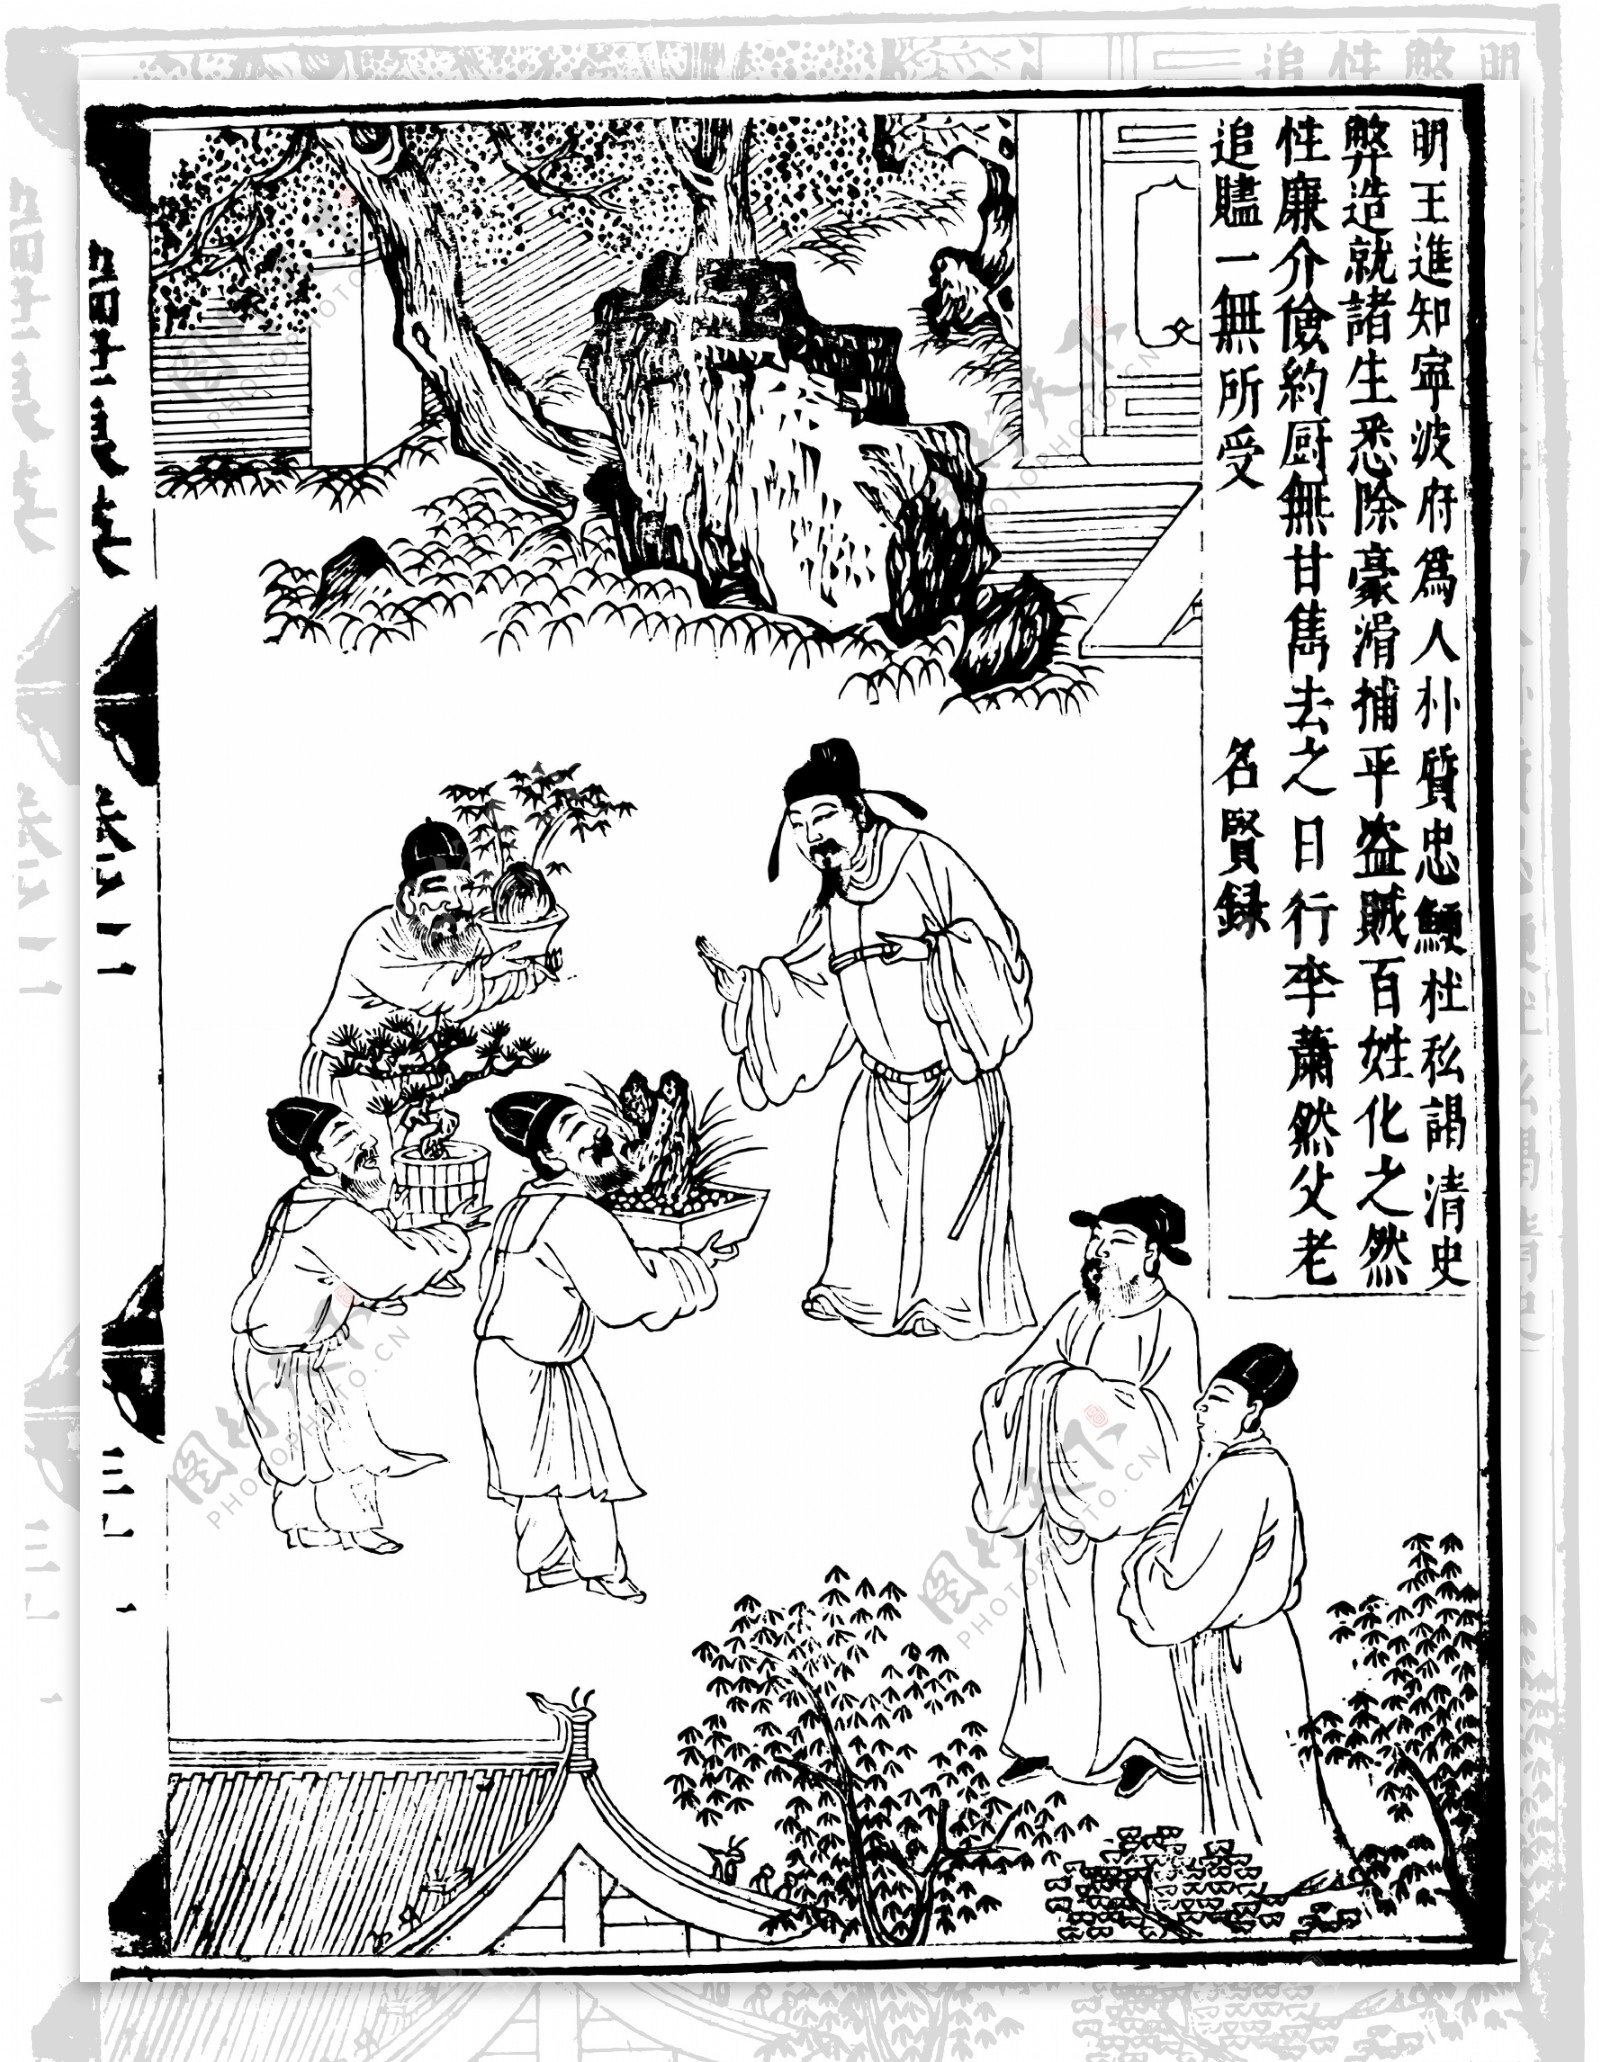 瑞世良英木刻版画中国传统文化55